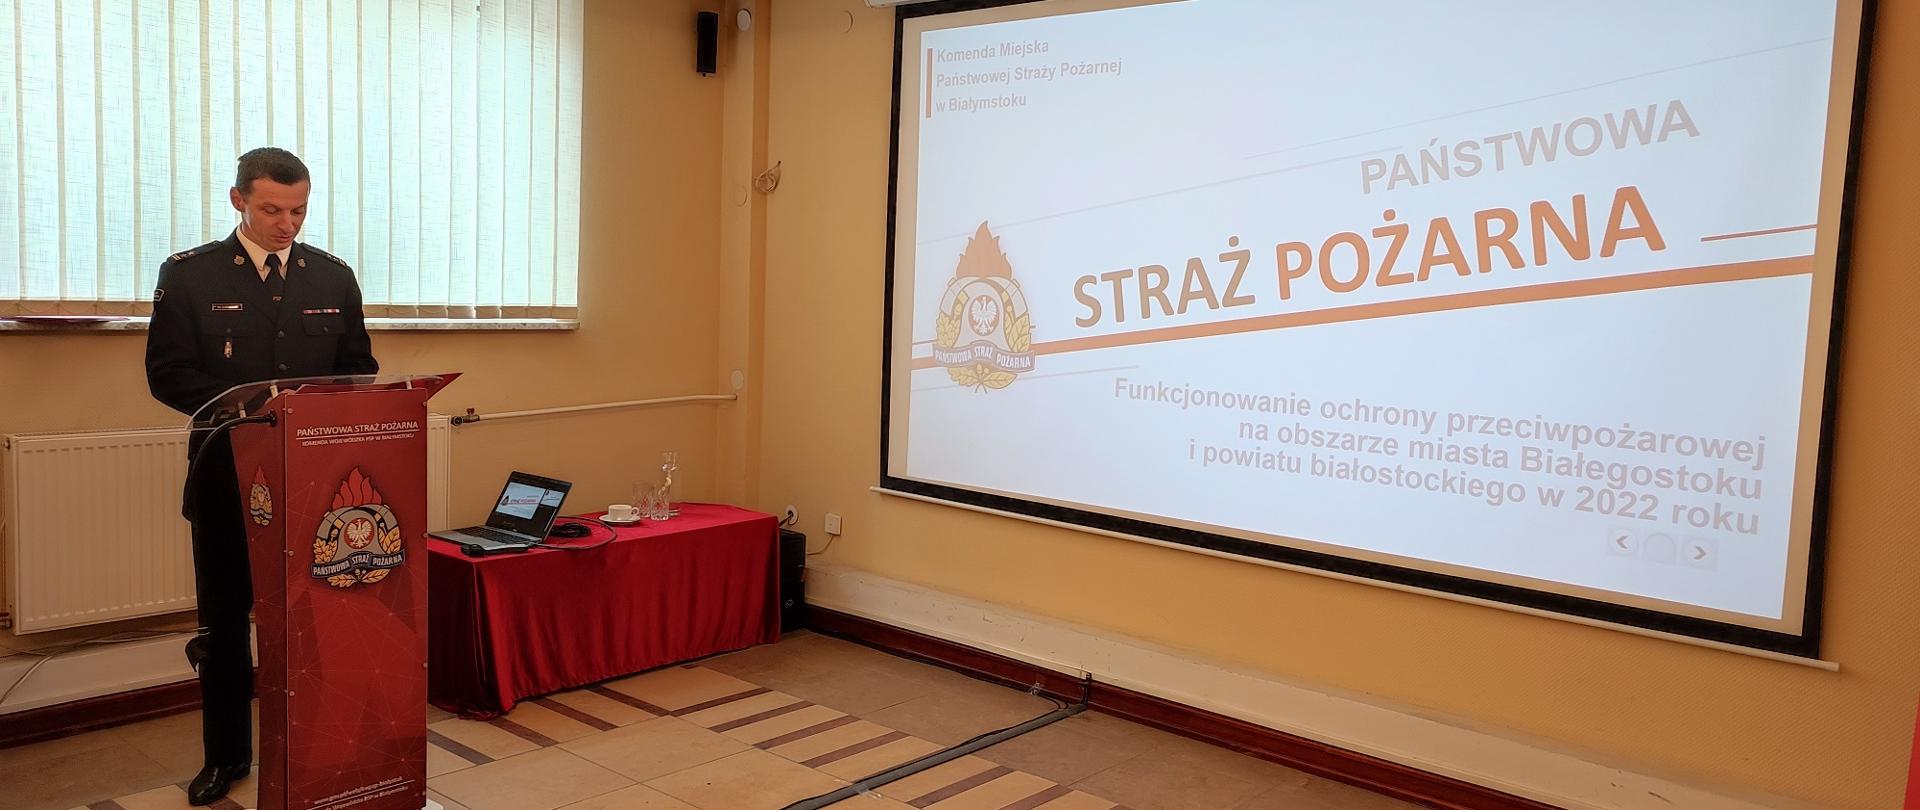 Narada podsumowująca działalność ochrony przeciwpożarowej na terenie obszarze miasta Białegostoku i powiatu białostockiego w 2022 roku